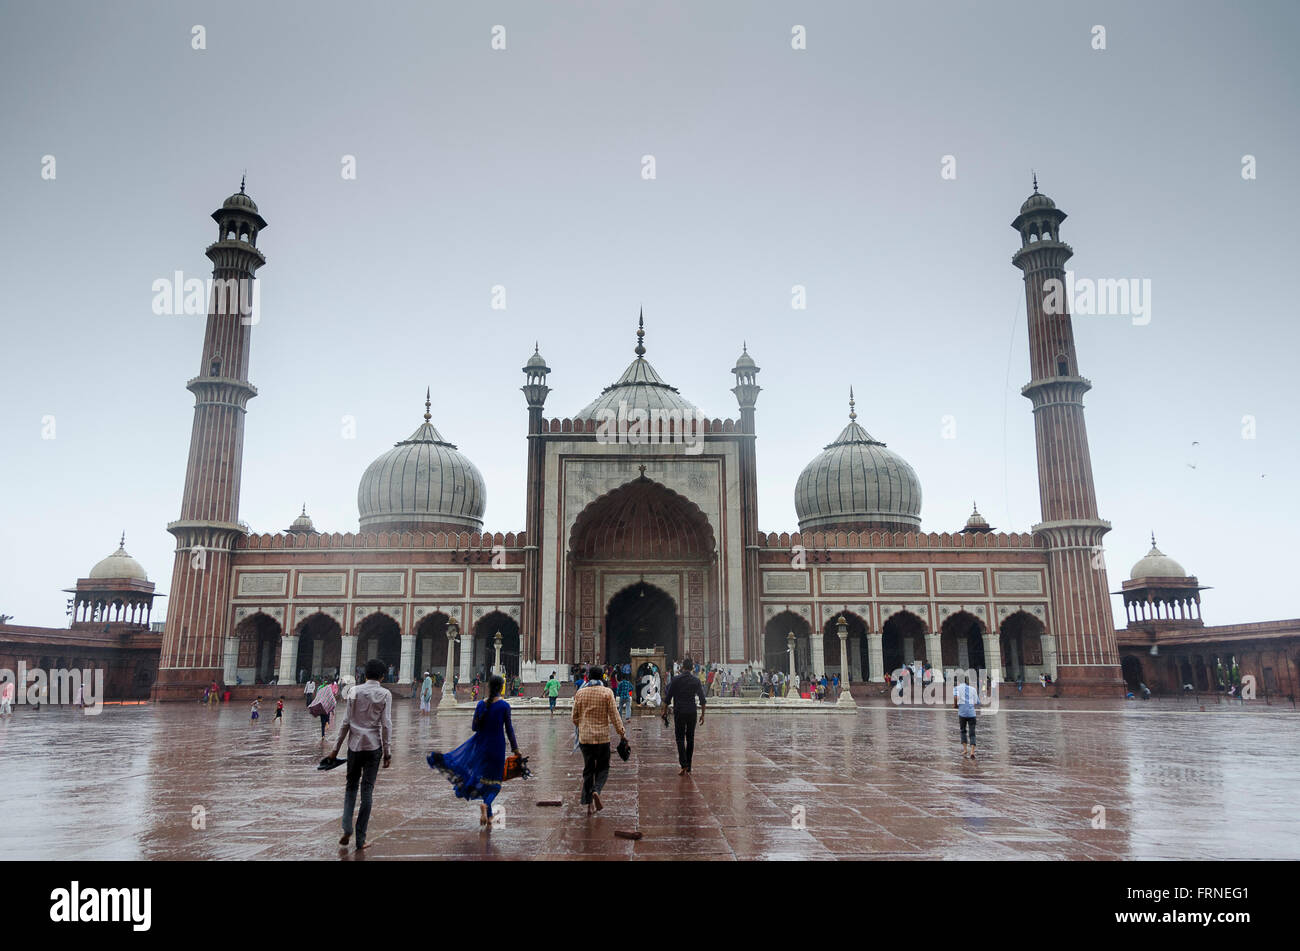 La mosquée Jama Masjid dans la vieille ville de Delhi, l'une des plus grandes mosquées de l'Inde. Banque D'Images